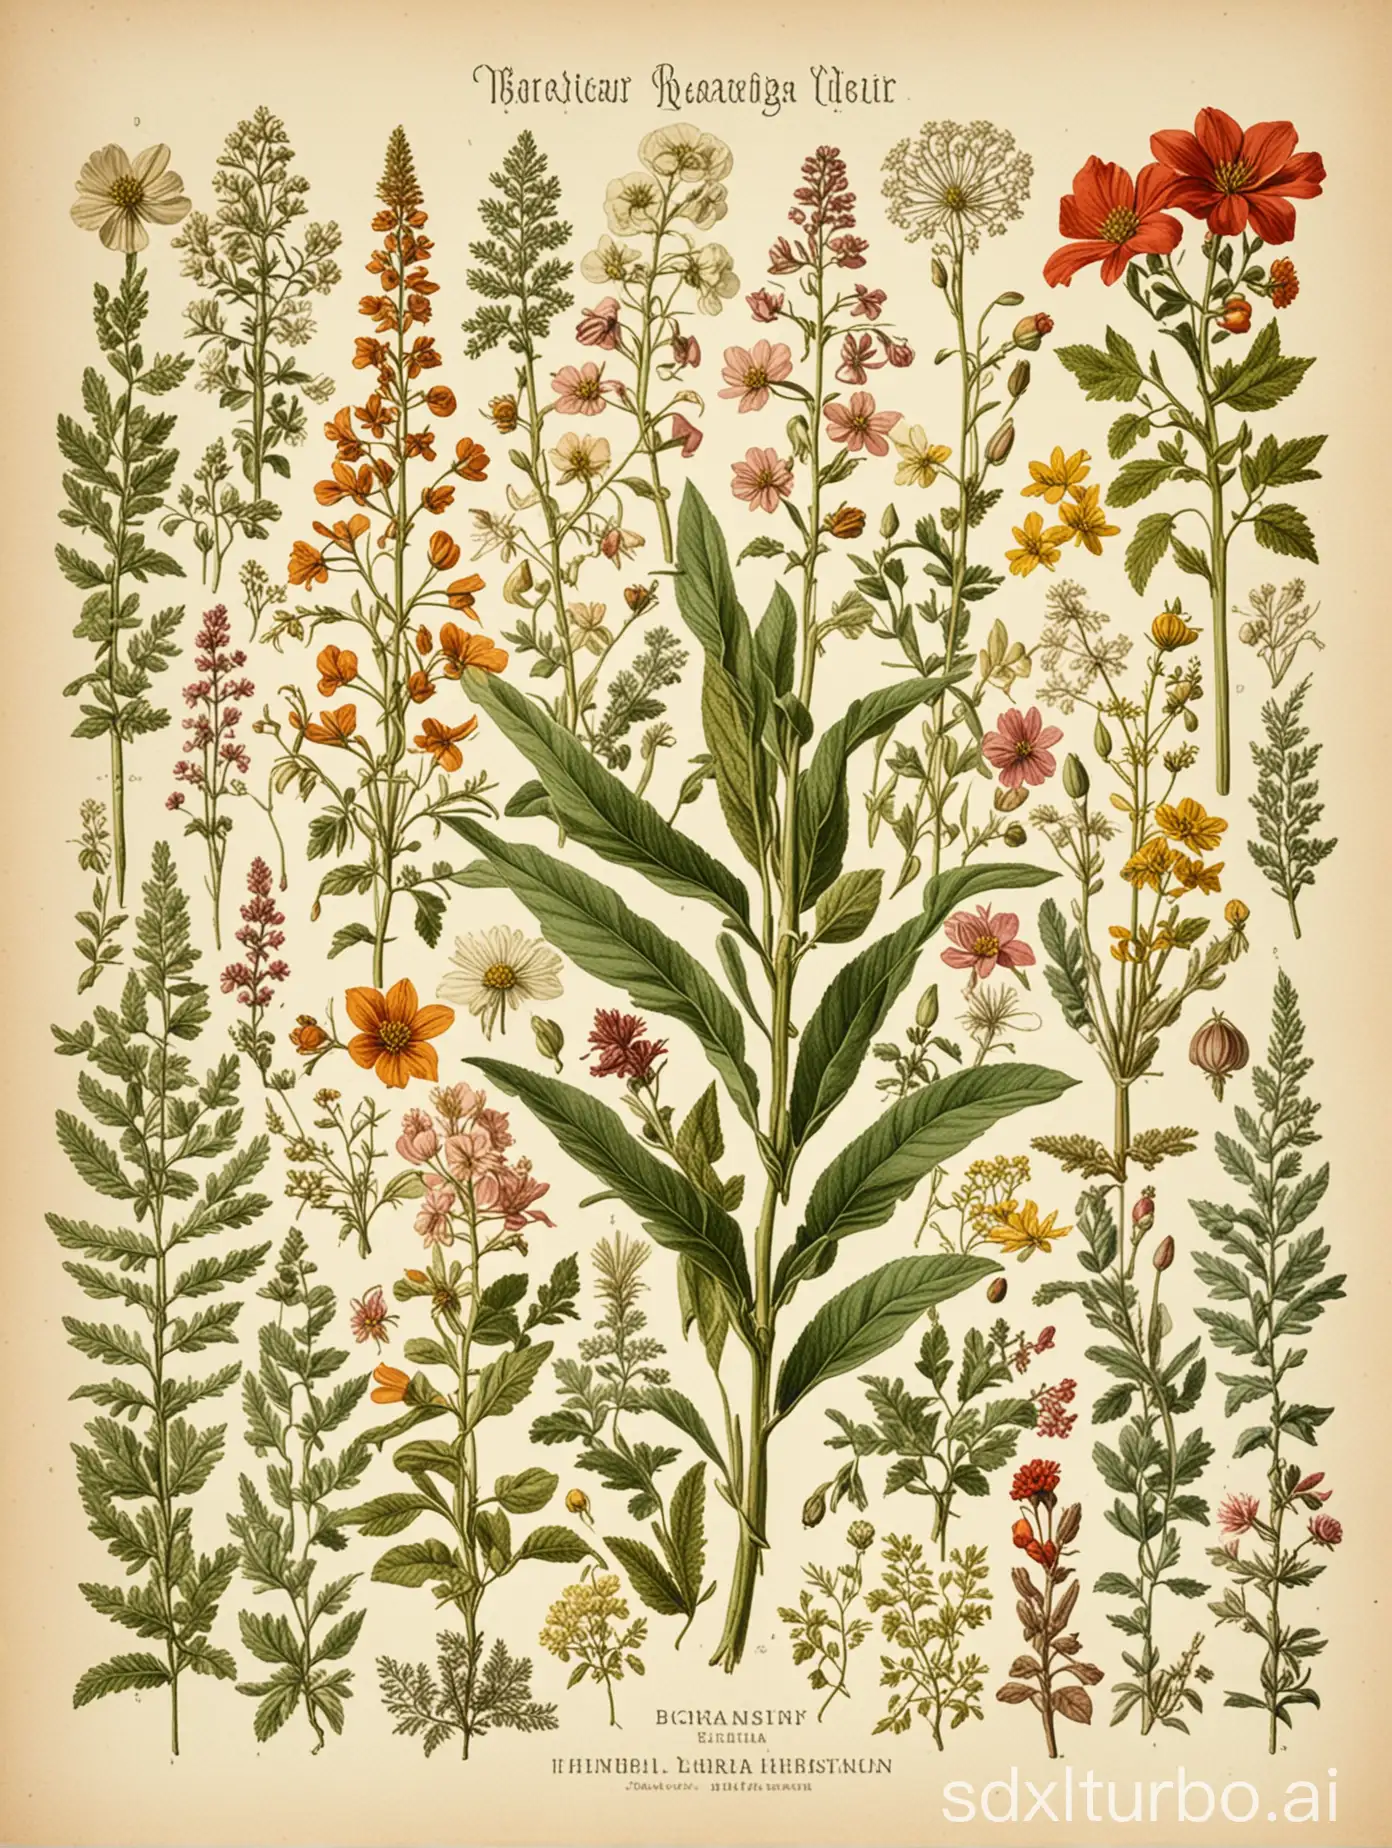 Botanical-Herbarium-Poster-Vibrant-Floral-Illustrations-on-Vintage-Paper